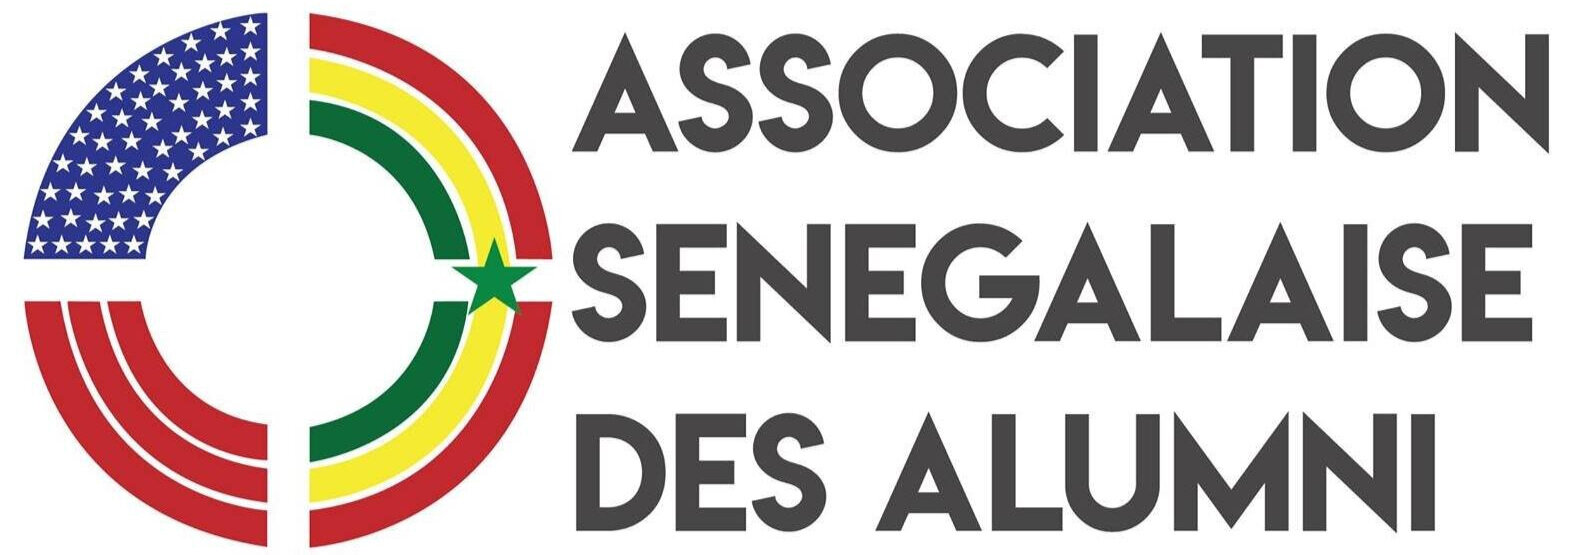 Senegal+-+Association+S%C3%A9n%C3%A9galaise+des+Alumni.jpg